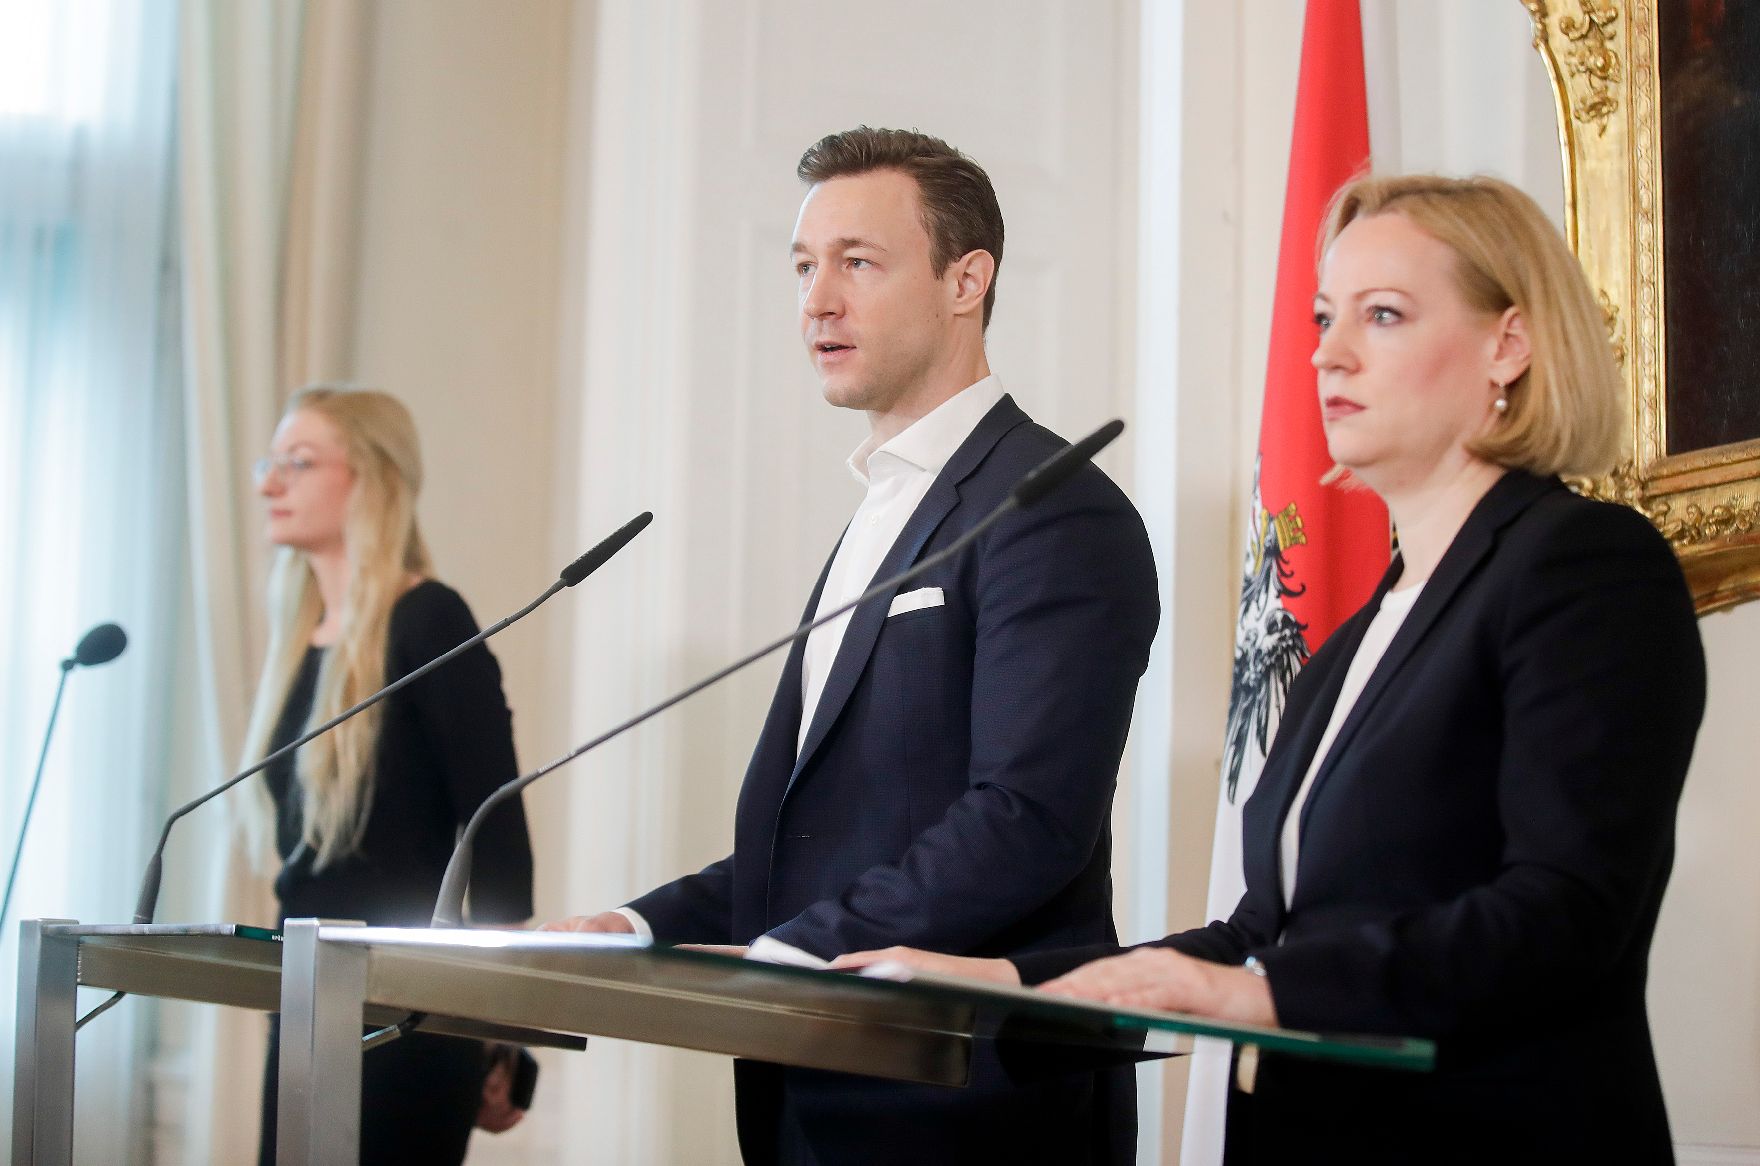 Am 9. Jänner 2019 fand eine Pressekonferenz zur Ernennung der neuen Leiterin des Bundesdenkmalamt Erika Pieler (r.) mit Bundesminister Gernot Blümel (m.) statt.